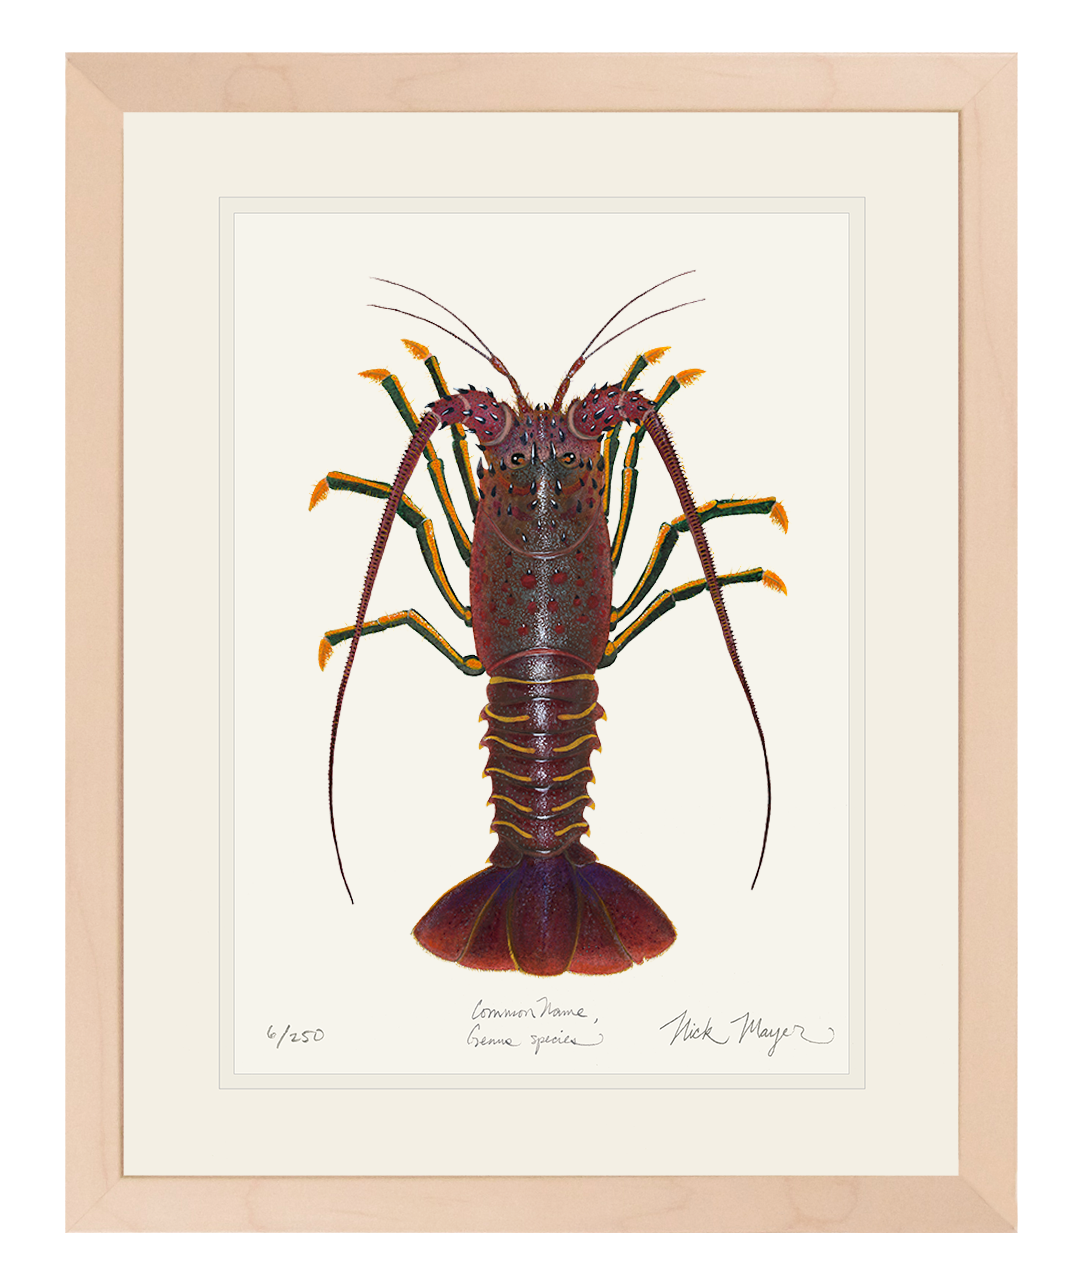 Spiny Lobster I Print